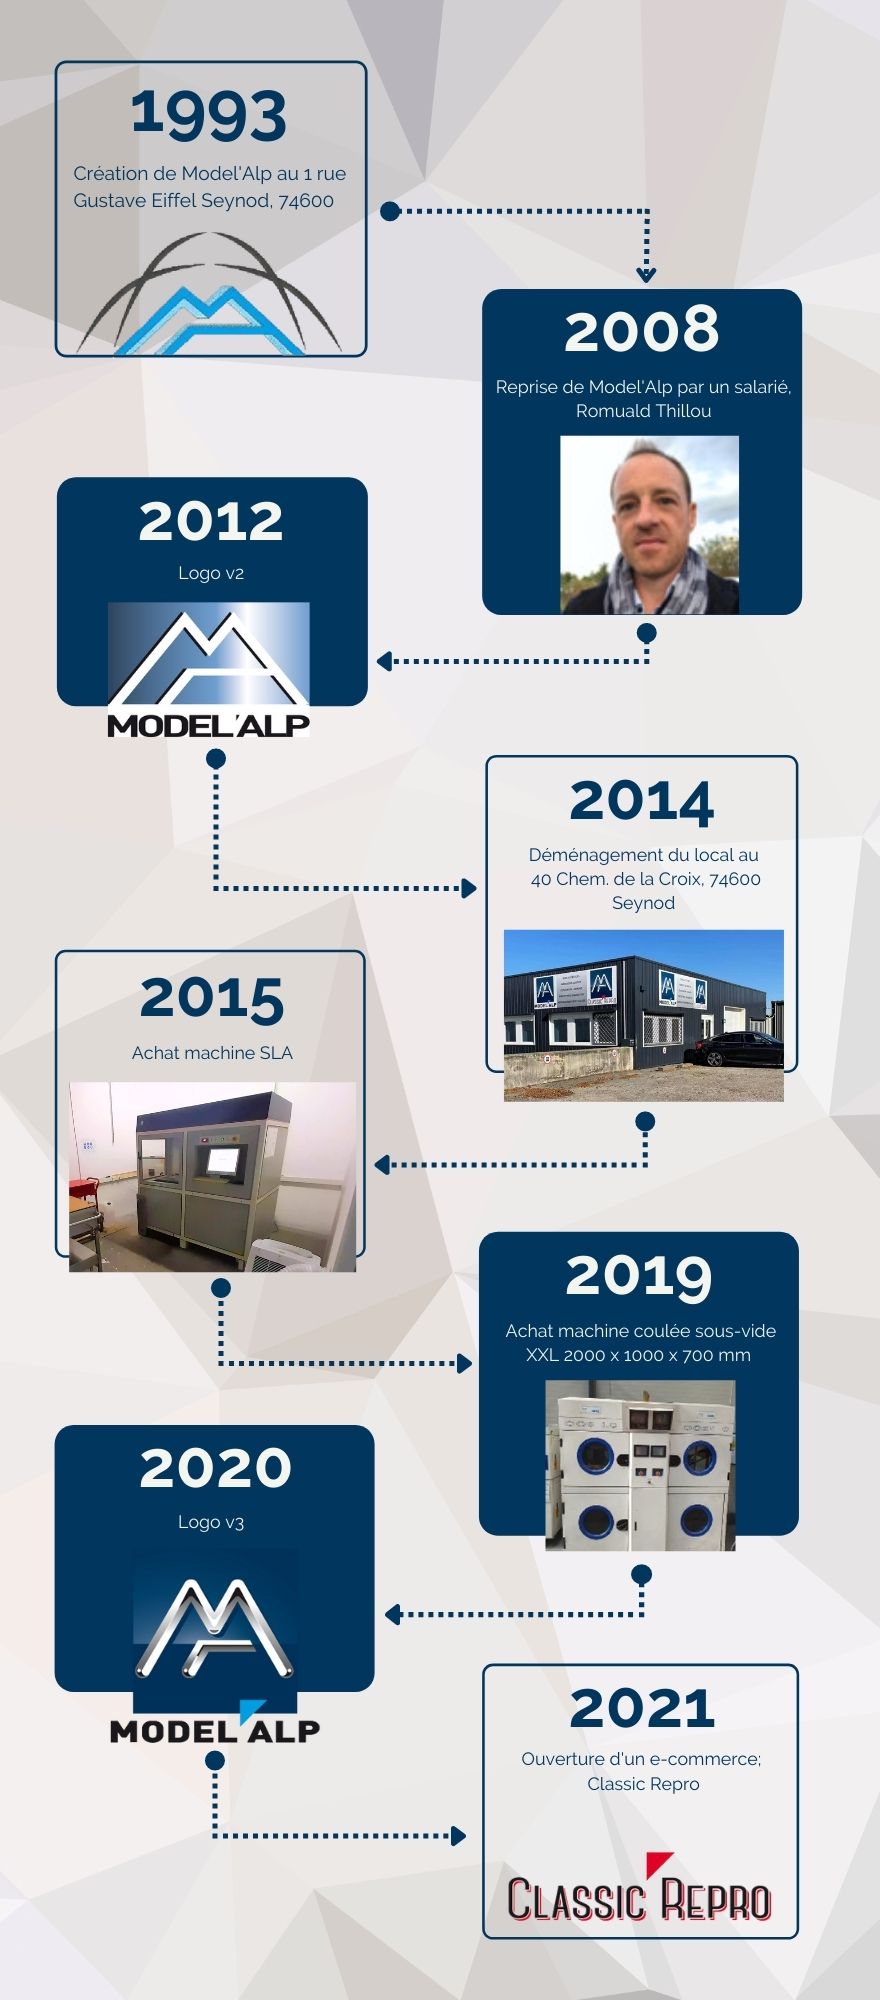 Histoire Model'Alp